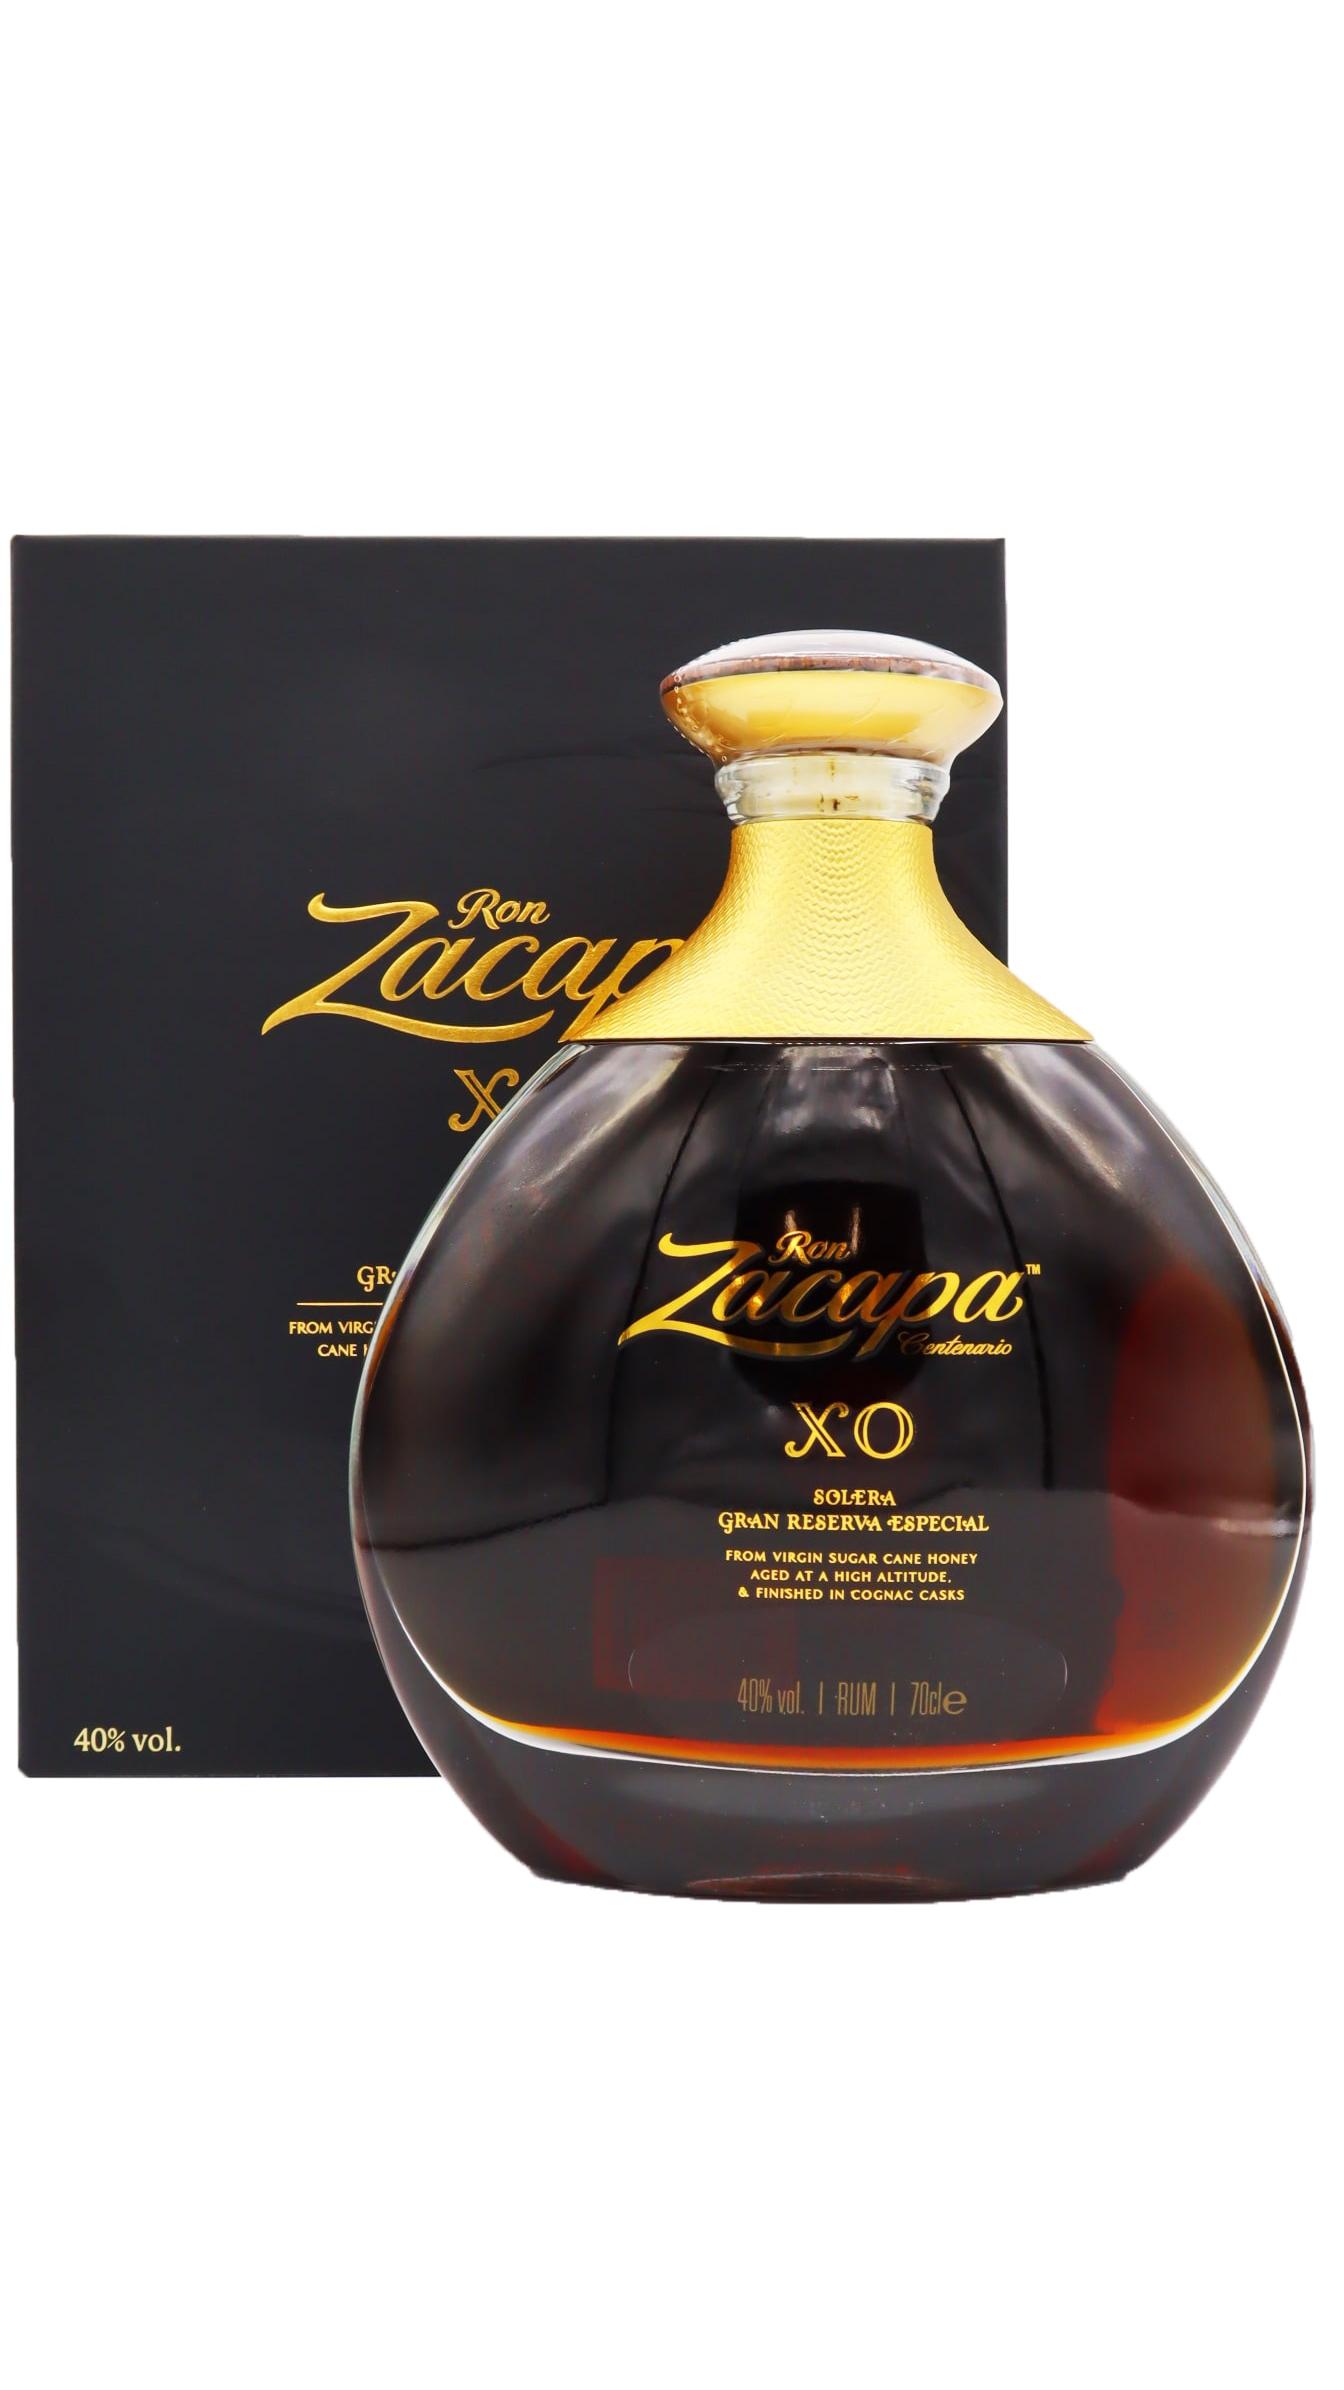 Ron Zacapa - Centenario XO Solera Gran Reserva Especial Rum